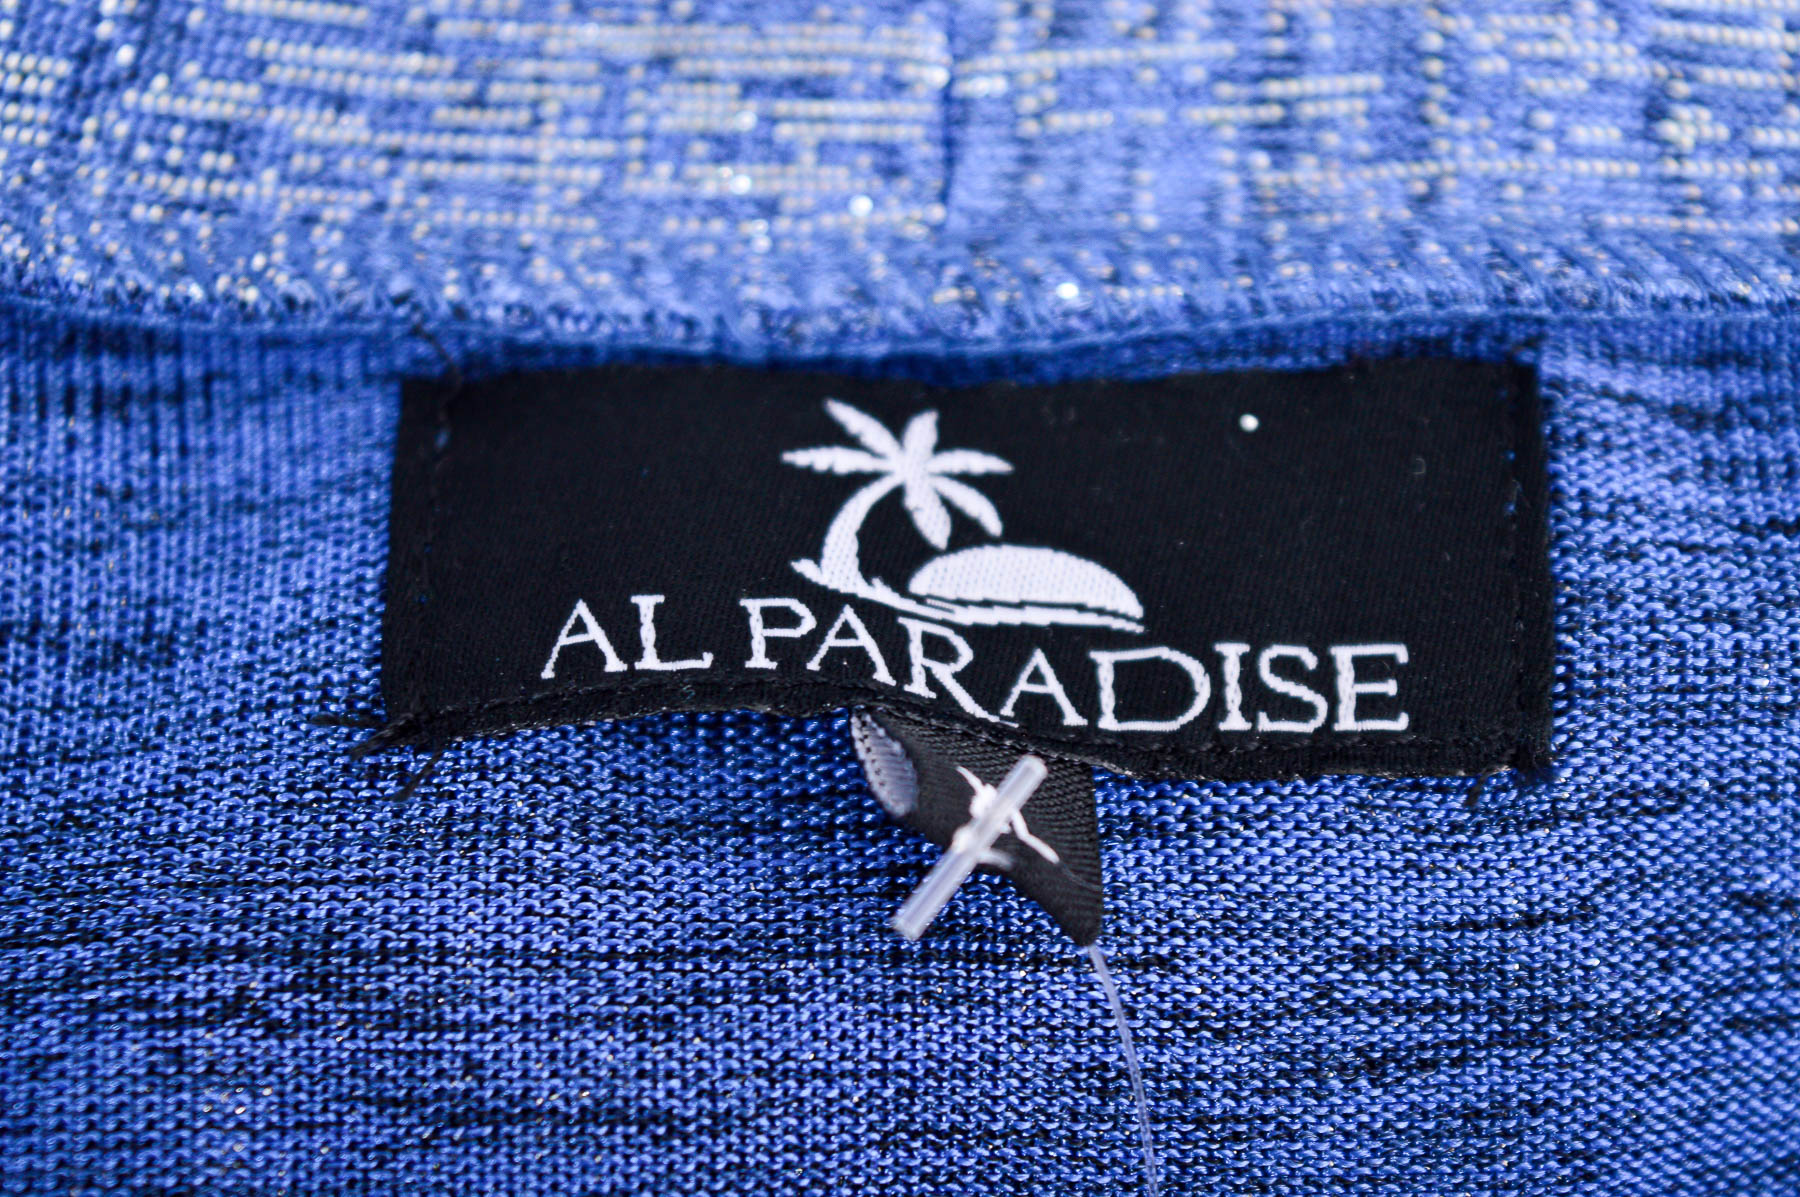 Cardigan / Jachetă de damă - Al Paradise - 2